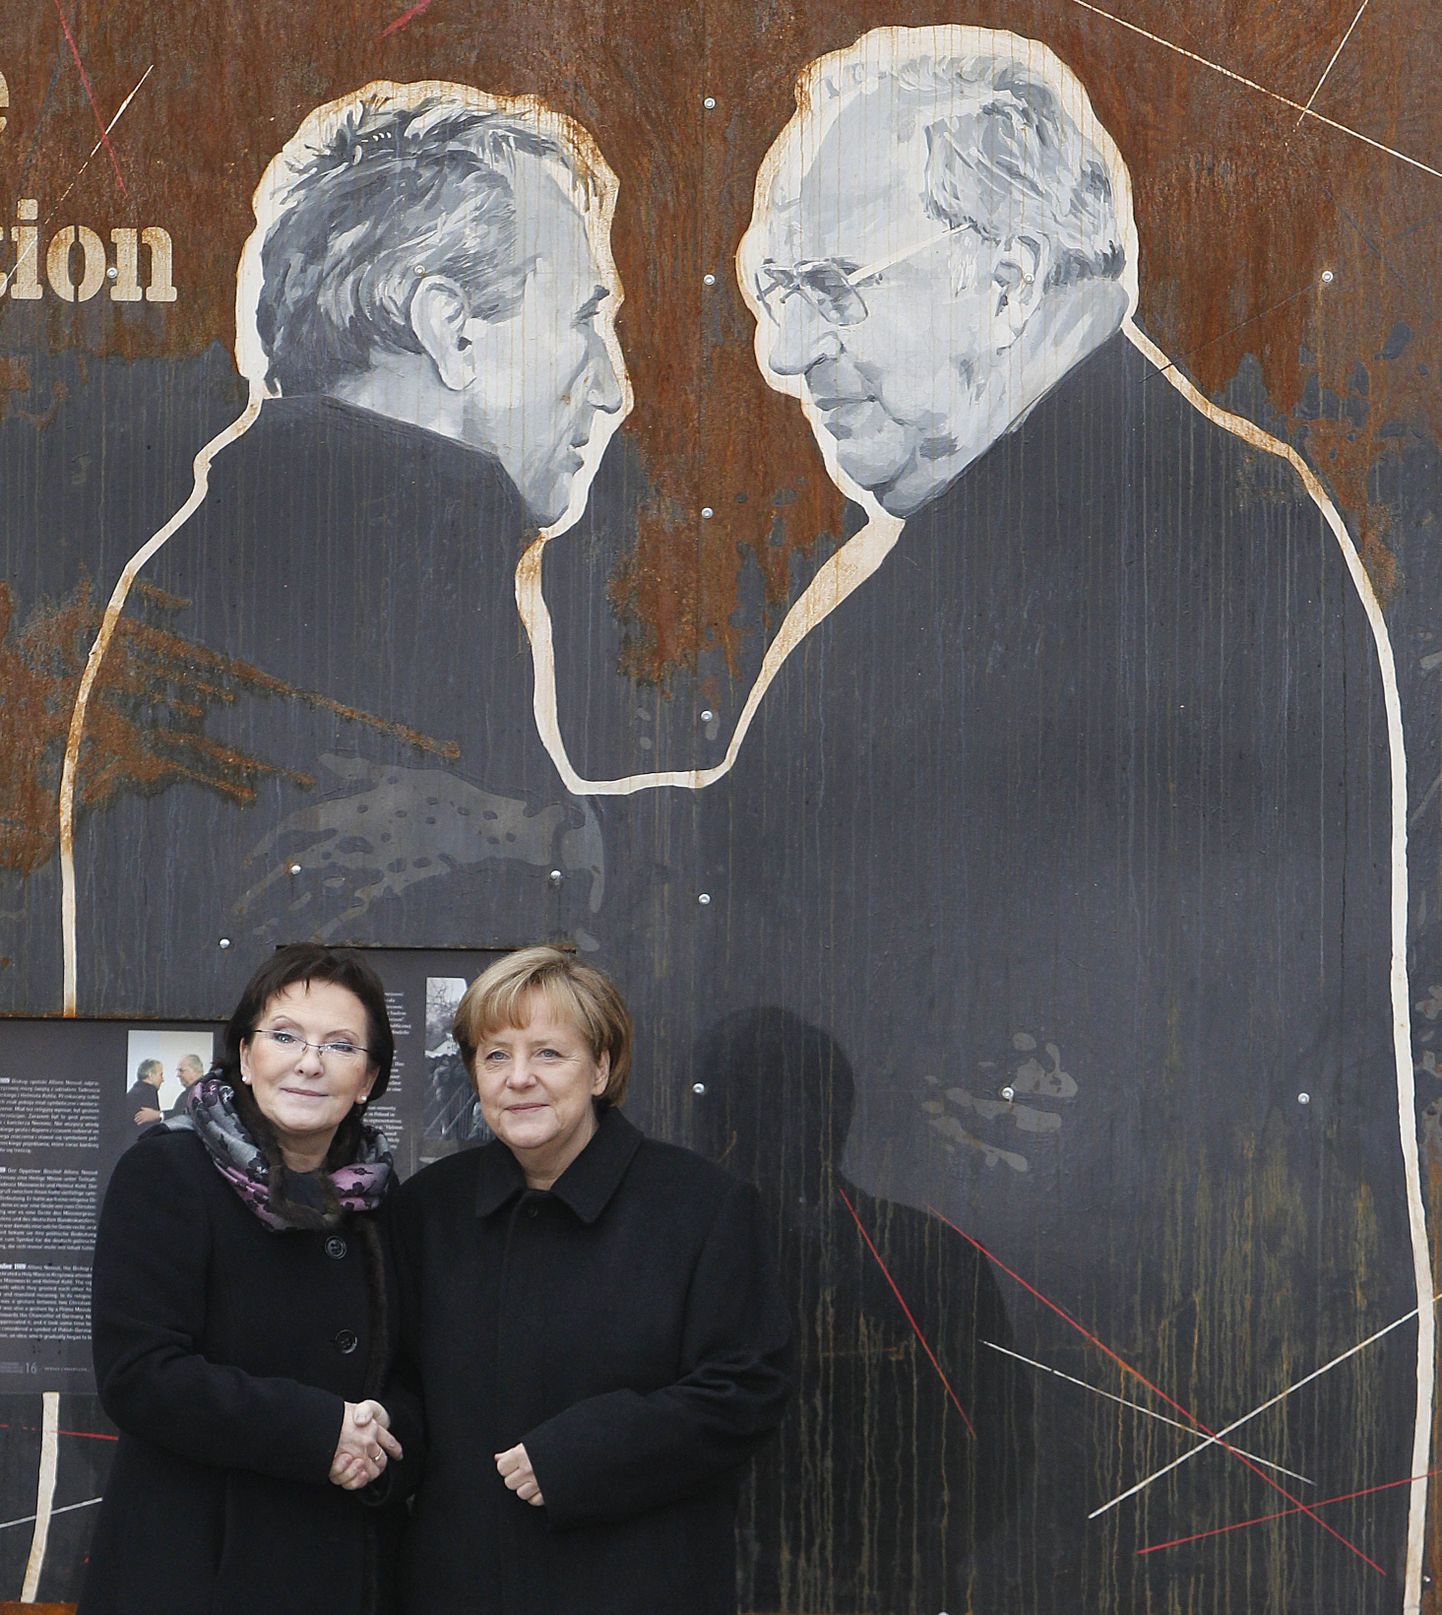 Poola peaminister Ewa Kopacz (vasakul) ja Saksa liidukantsler Angela Merkel pannoo ees, mis kujutab Poola ekspeaministrit Tadeusz Mazowieckit (vasakul) ja Saksa endist liidukantslerit Helmut Kohli.